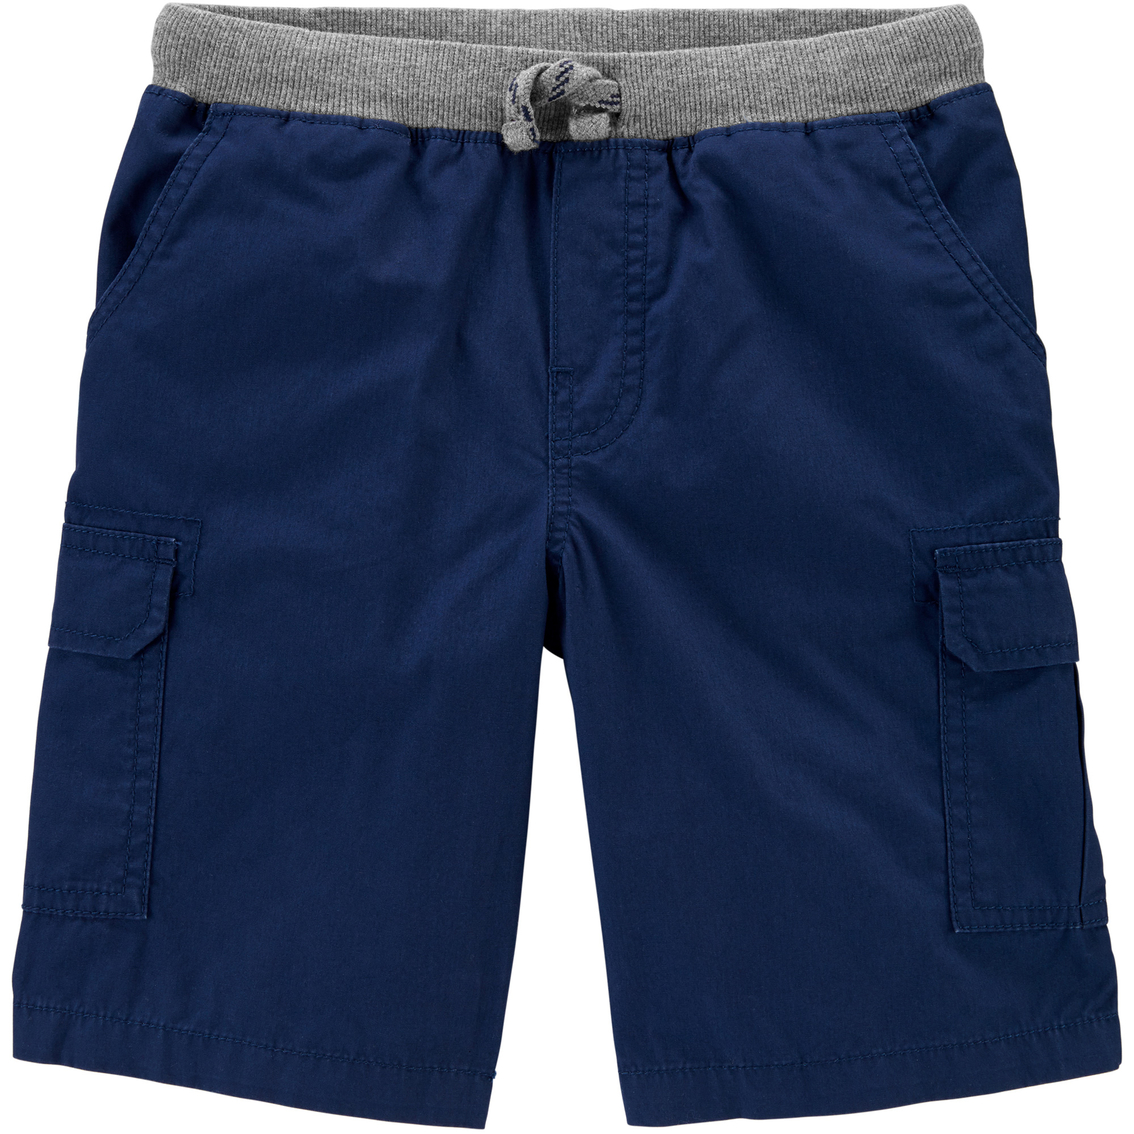 Carter's Little Boys Navy Cargo Shorts | Boys 8-20 | Clothing ...